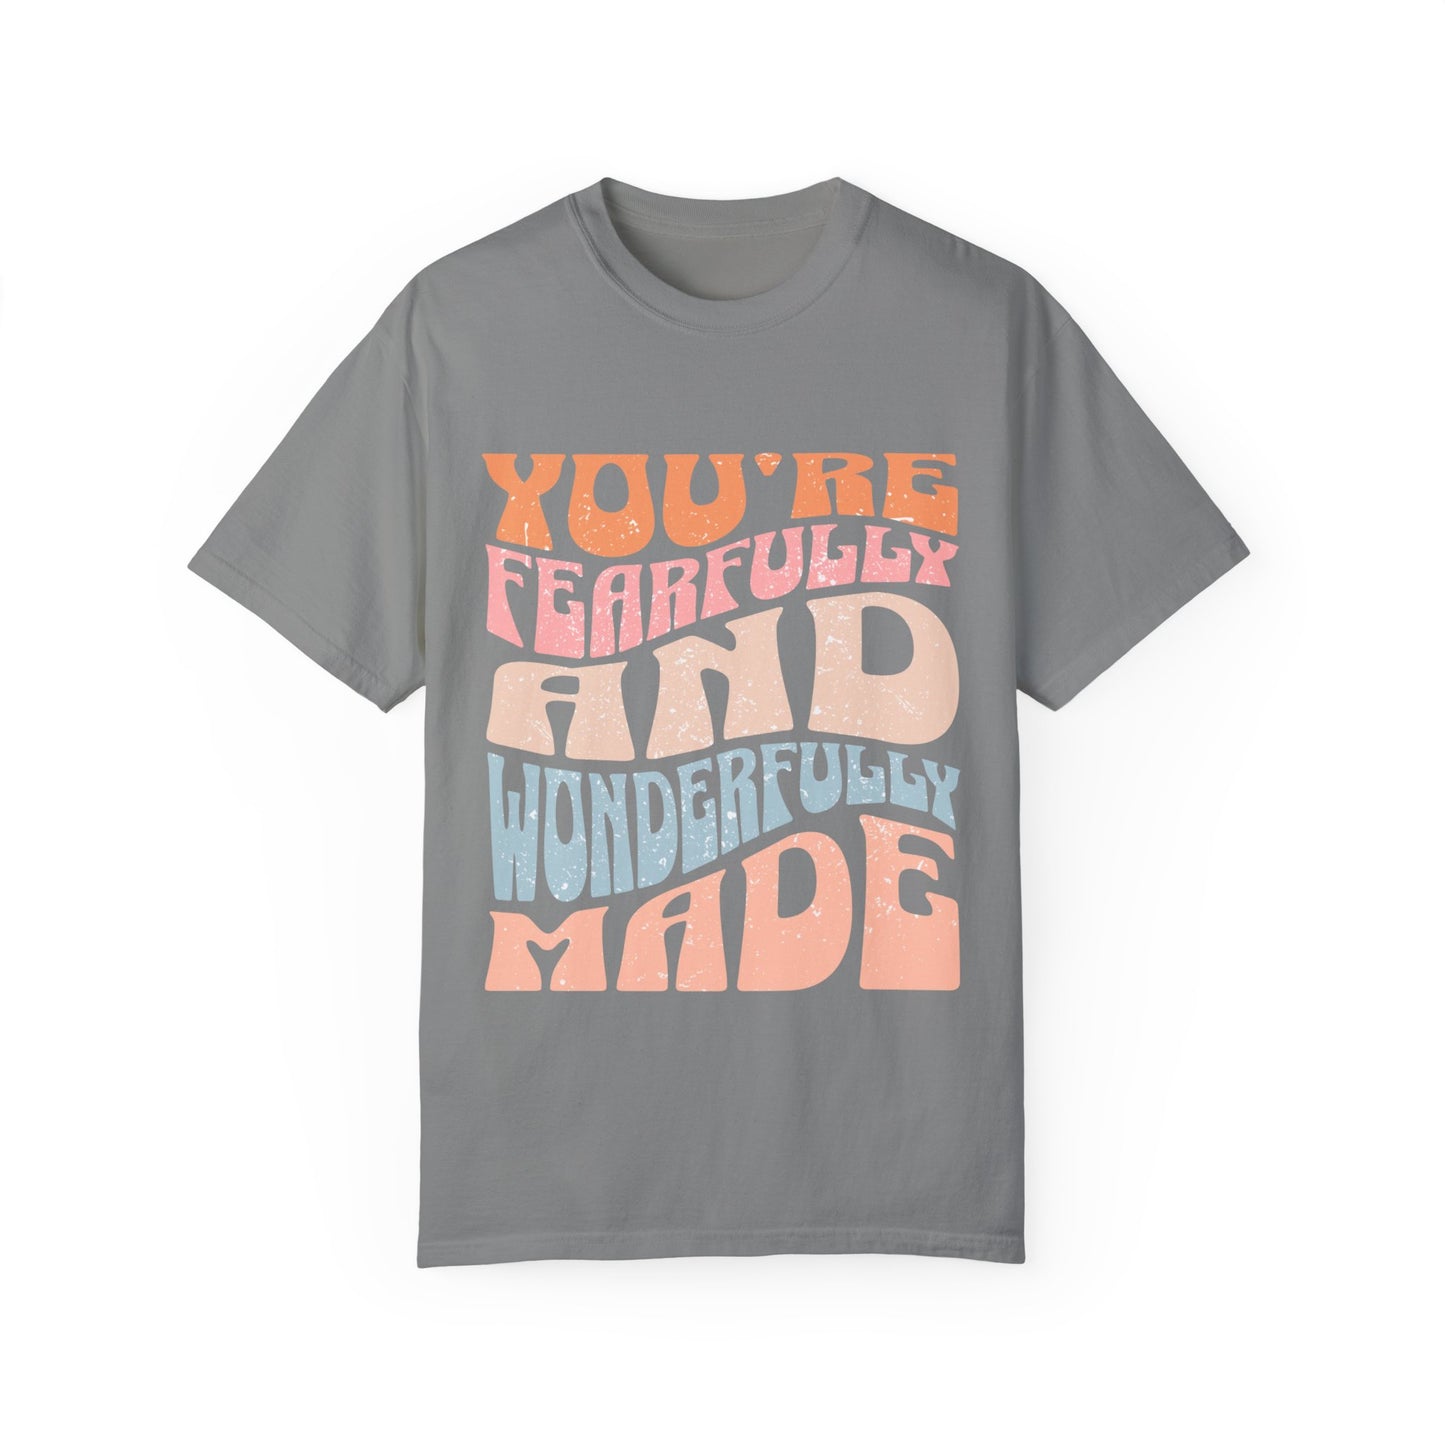 You are Faithfully & Wonderfull Made Unisex Garment-Dyed T-shirt